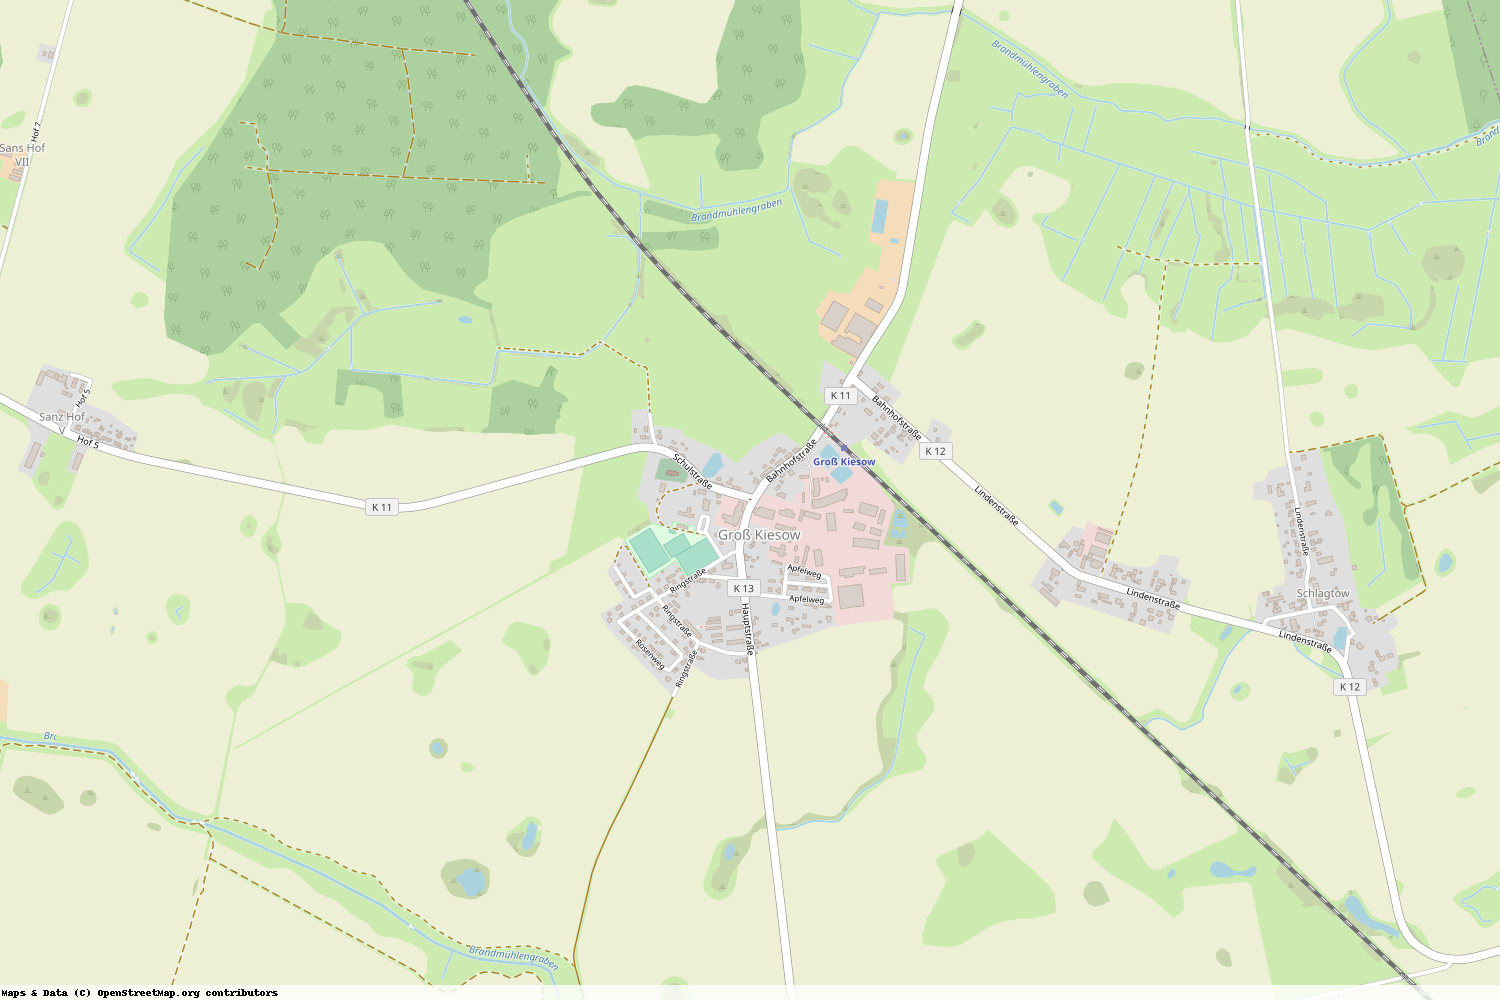 Ist gerade Stromausfall in Mecklenburg-Vorpommern - Vorpommern-Greifswald - Groß Kiesow?